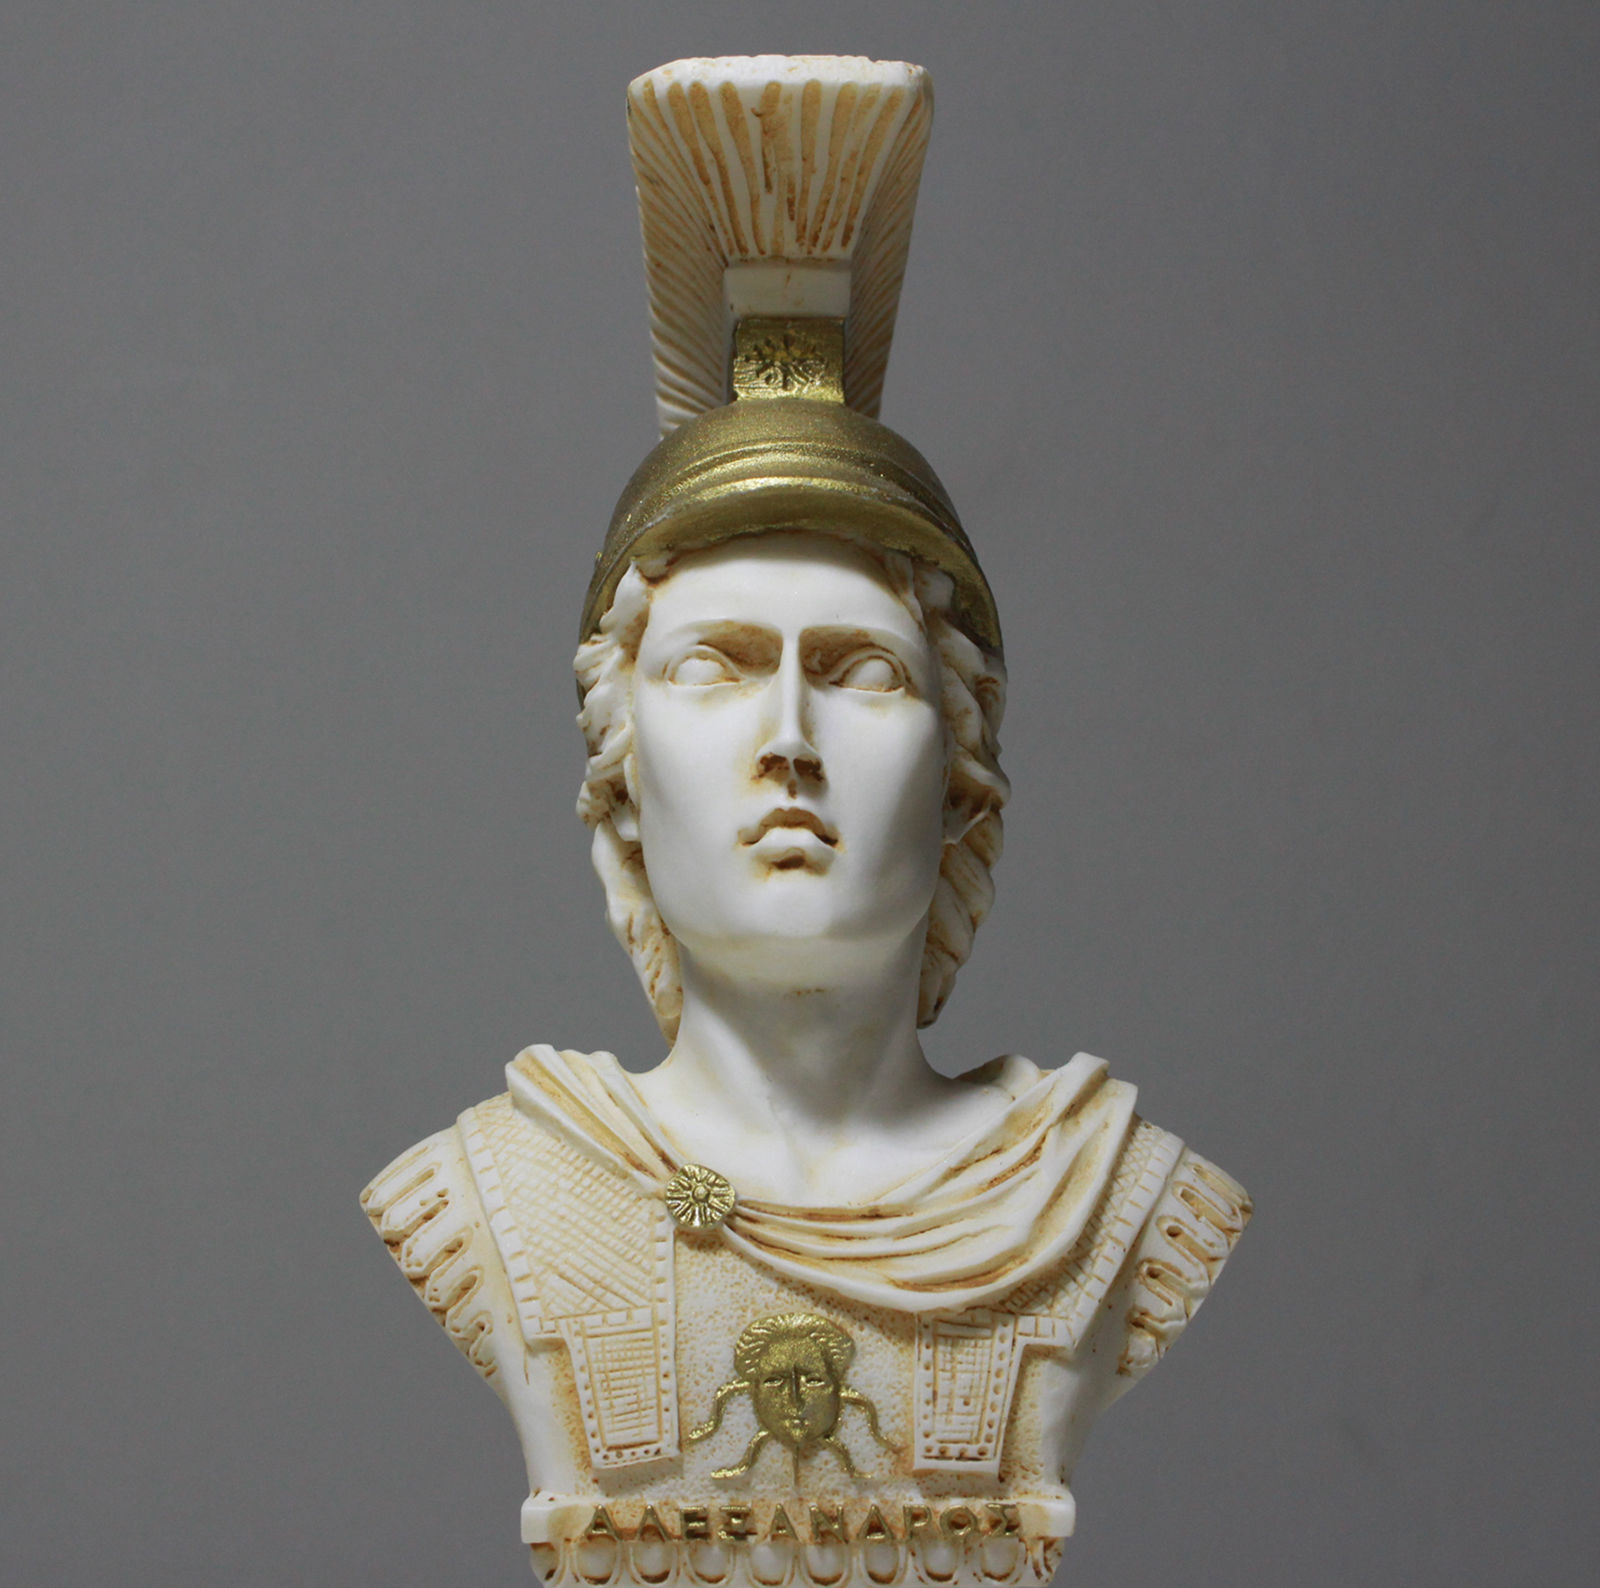 代购希腊马其顿亚历山大大帝头盔泡沫雪花石膏雕像42cm/16.5摆件